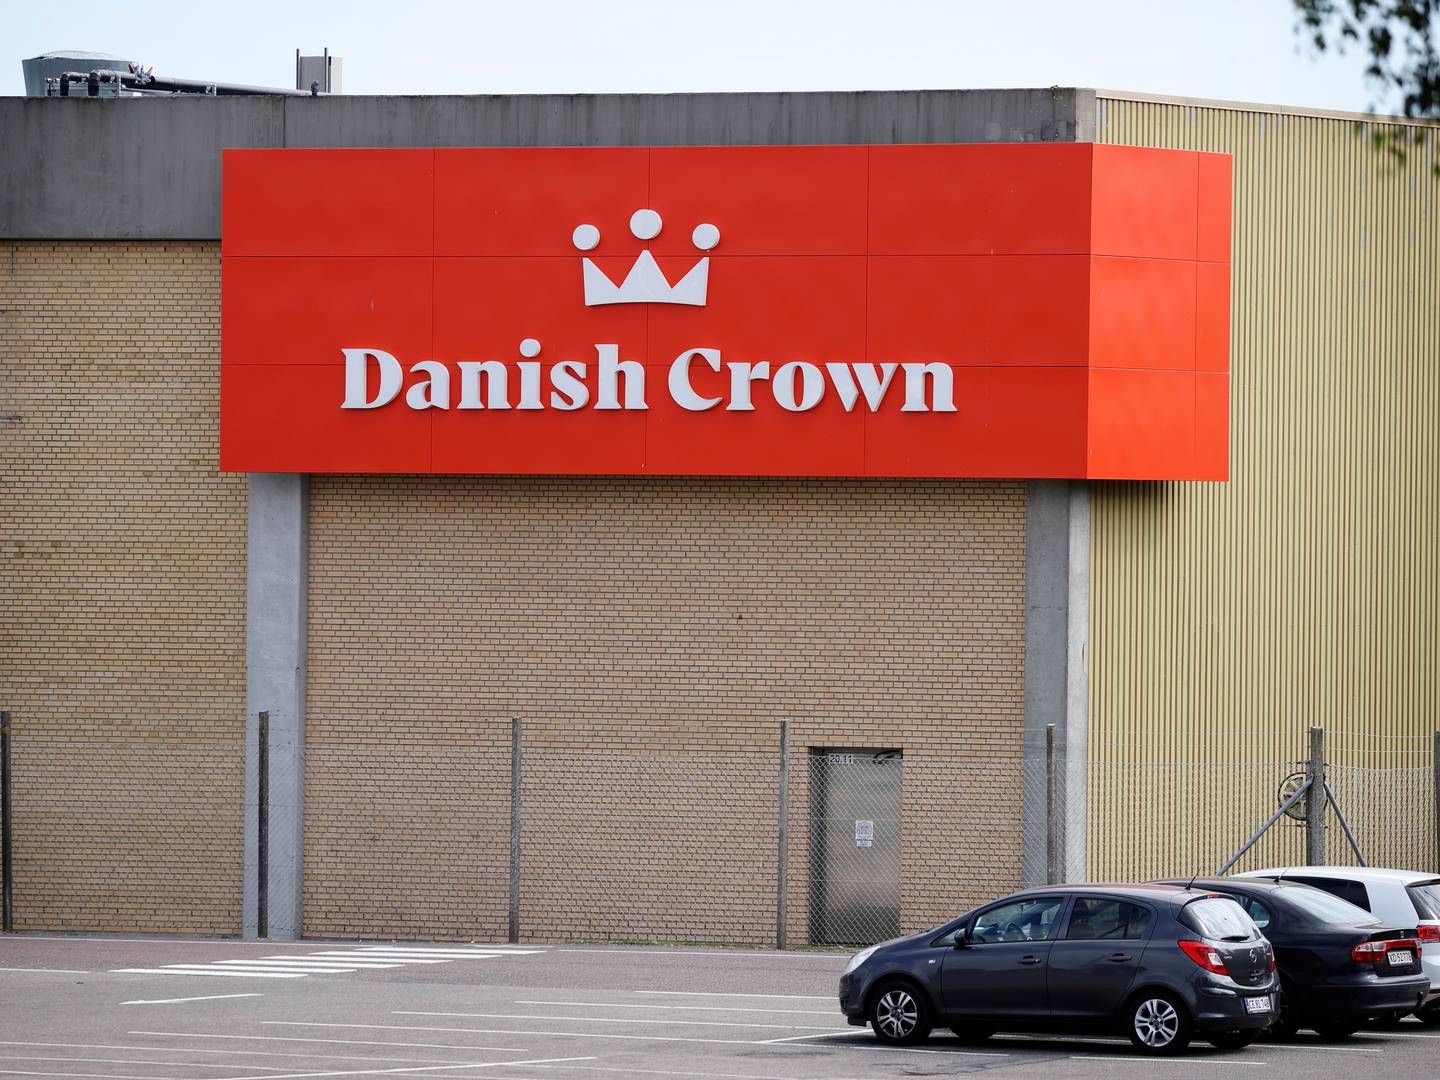 Danish Crown accepterer samtlige anklager mod virksomheden, der blev fremlagt i klimaretssagen – også dem, de ikke blev dømt for. | Foto: Jens Dresling/Ritzau Scanpix